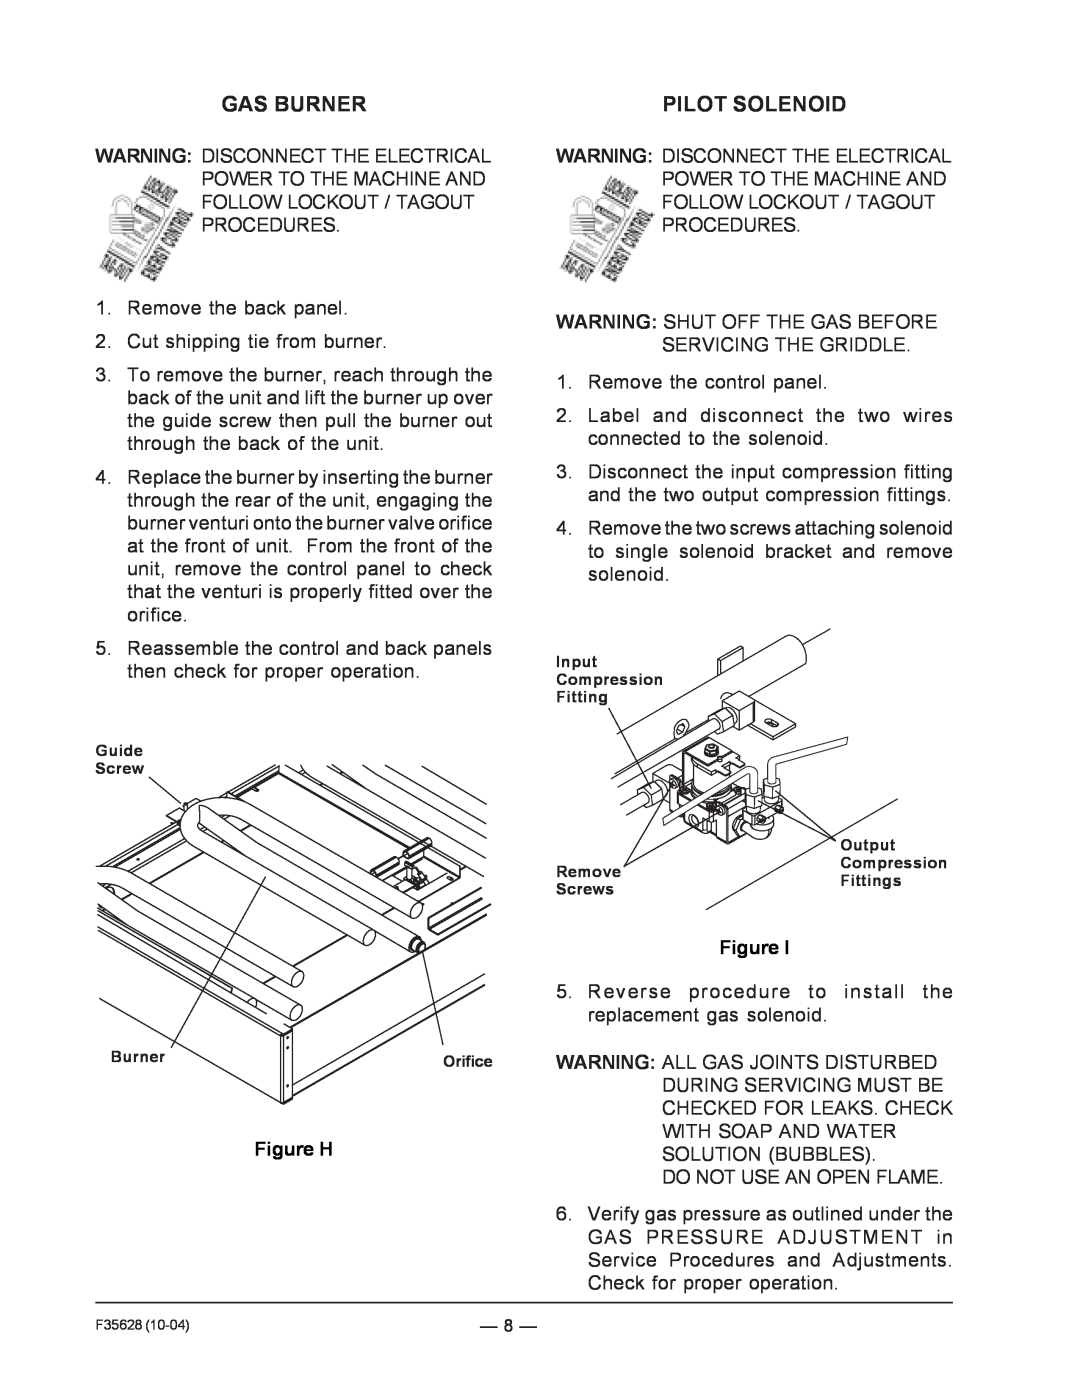 Vulcan-Hart service manual Gas Burner, Pilot Solenoid, Figure H 